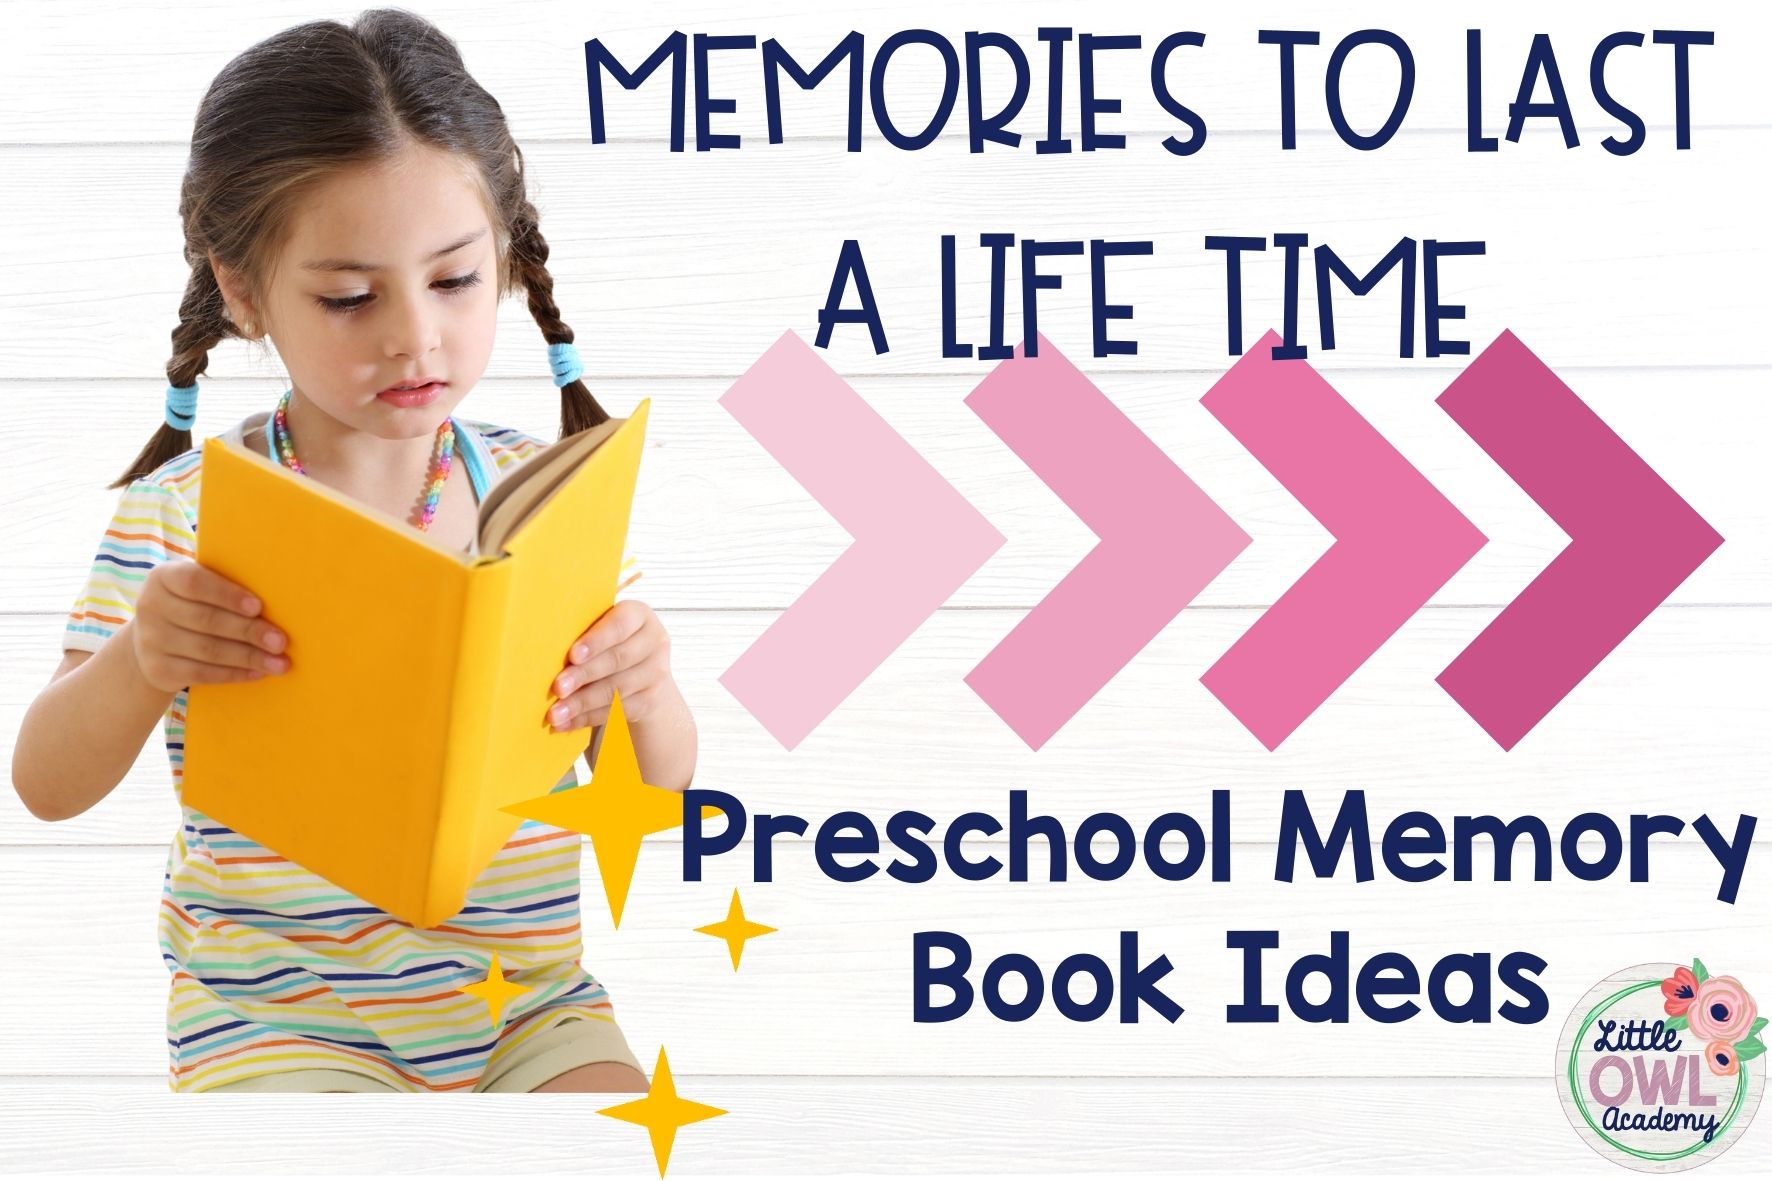 Preschool Memory Book Ideas